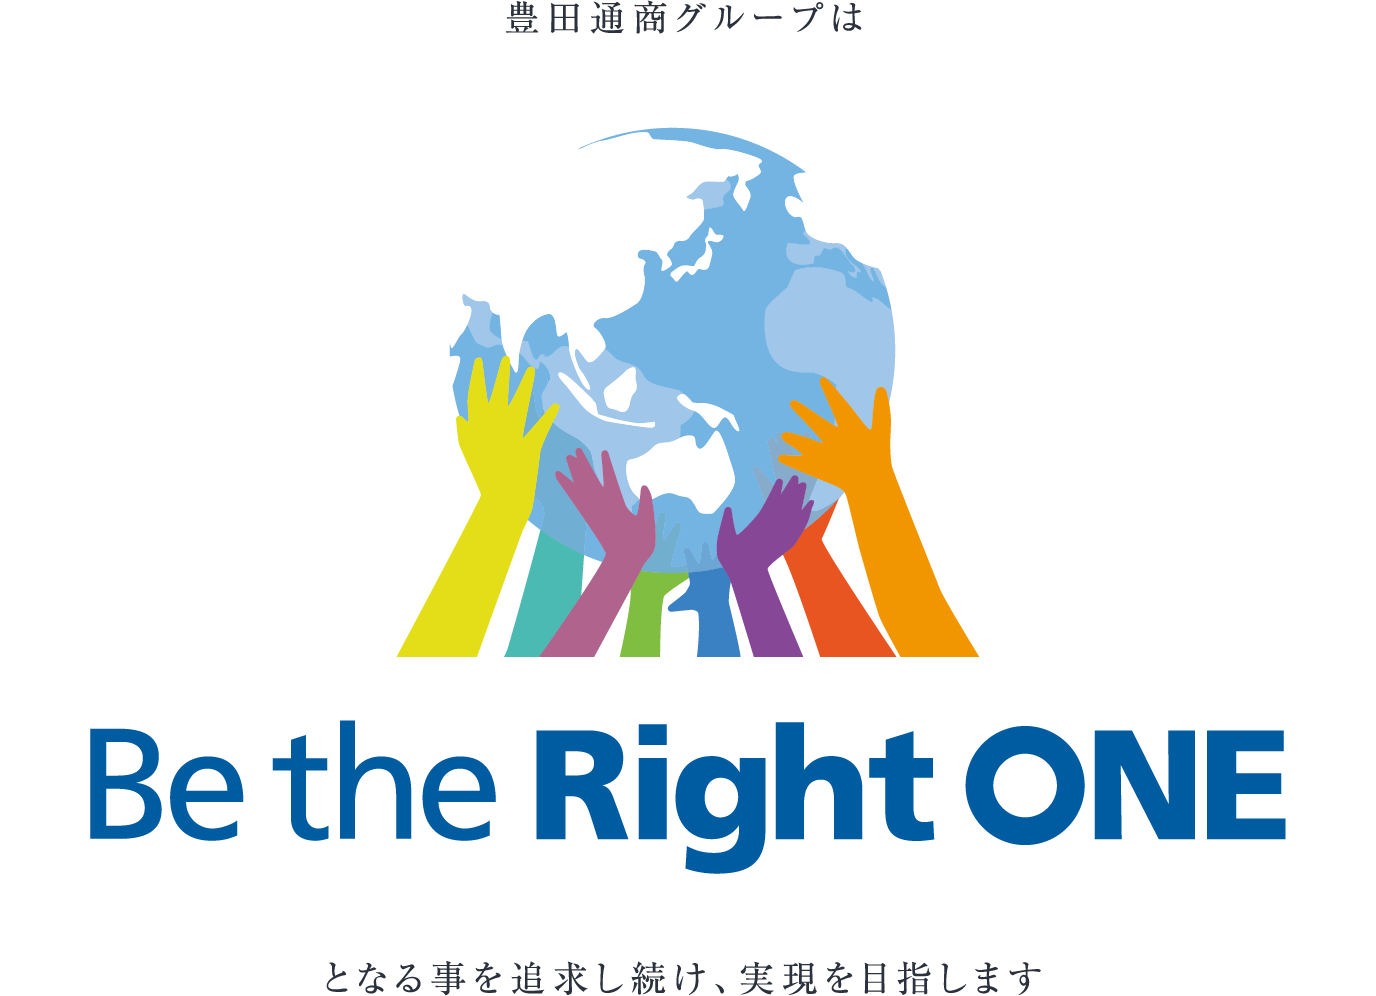 これからの10年、豊田通商グループは Be the Right ONE となる事を追求し続け、実現を目指します